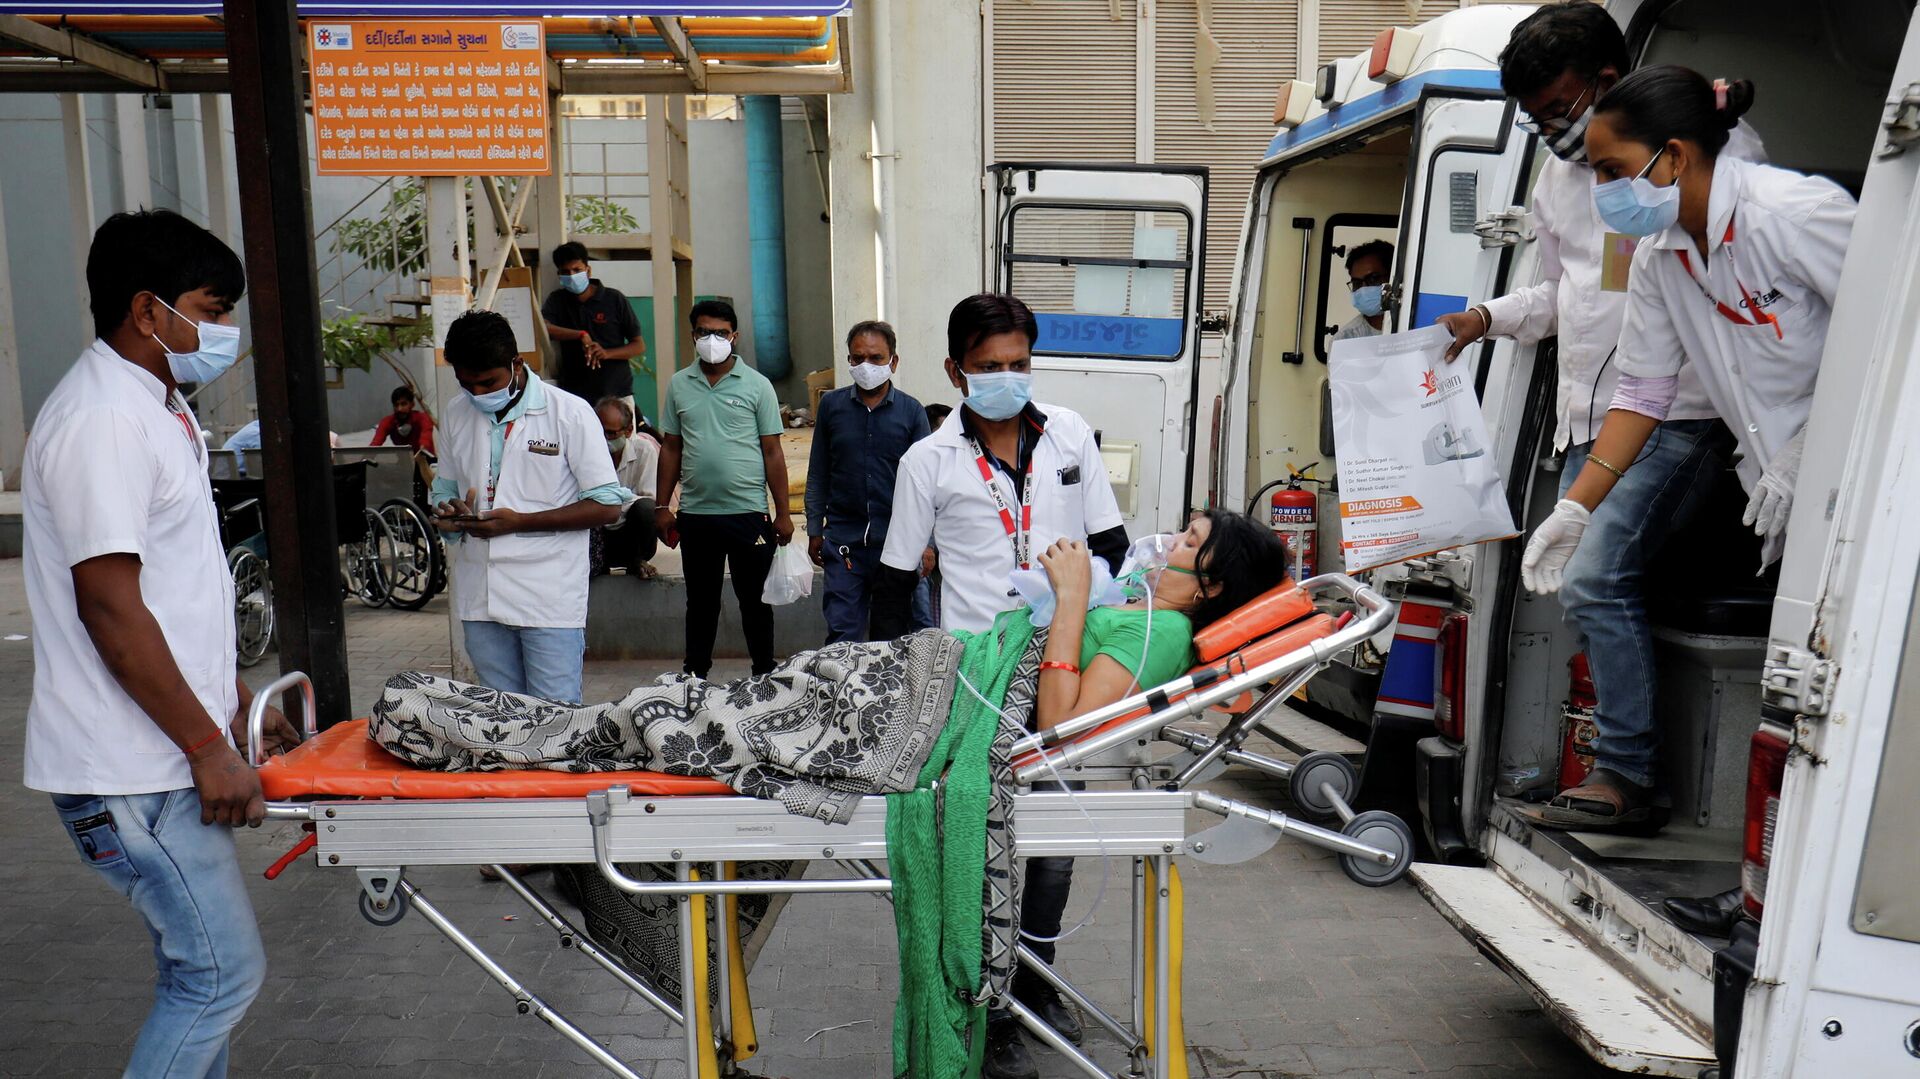 Пациента в кислородной маске везут в больницу для лечения COVID-19 в Ахмедабаде, Индия - РИА Новости, 1920, 23.04.2021